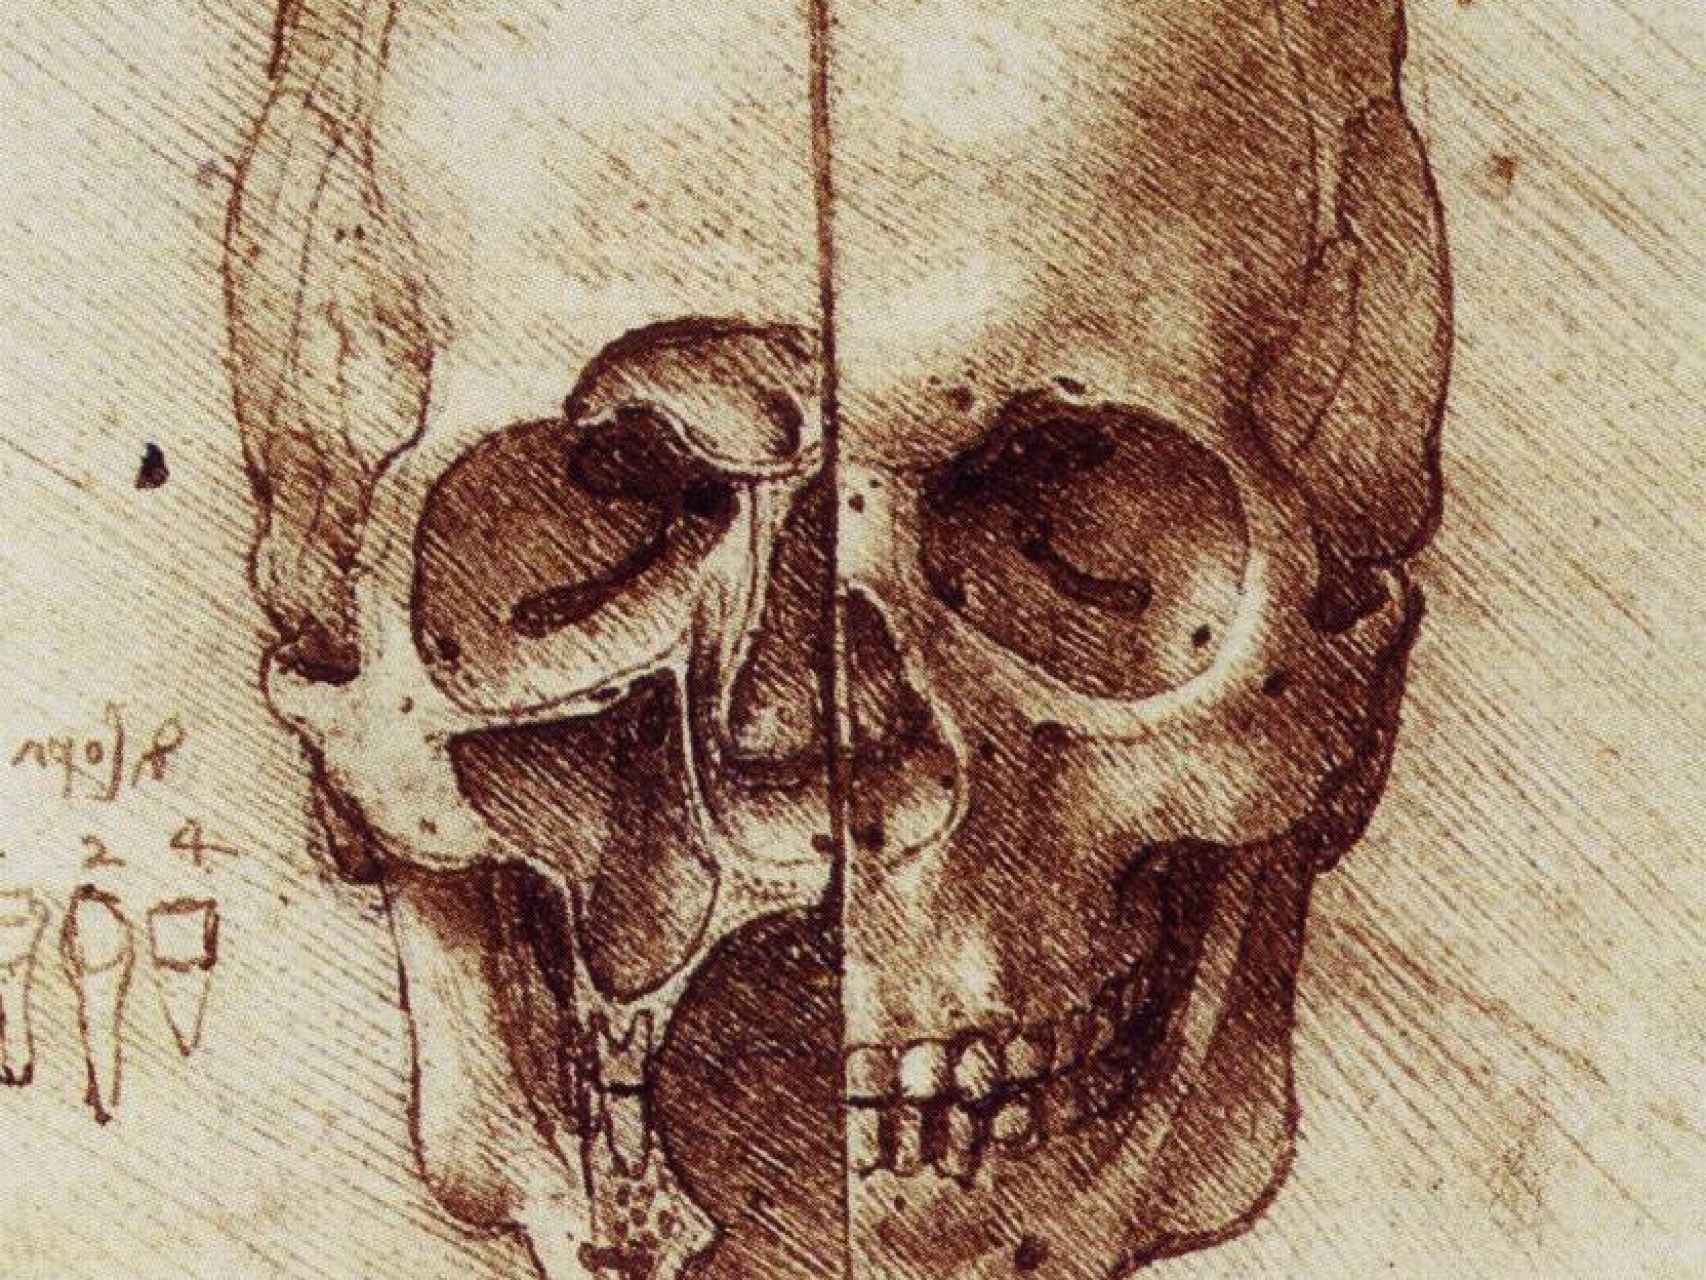 Un dibujo de una calavera en los cuadernos de Leonardo da Vinci.